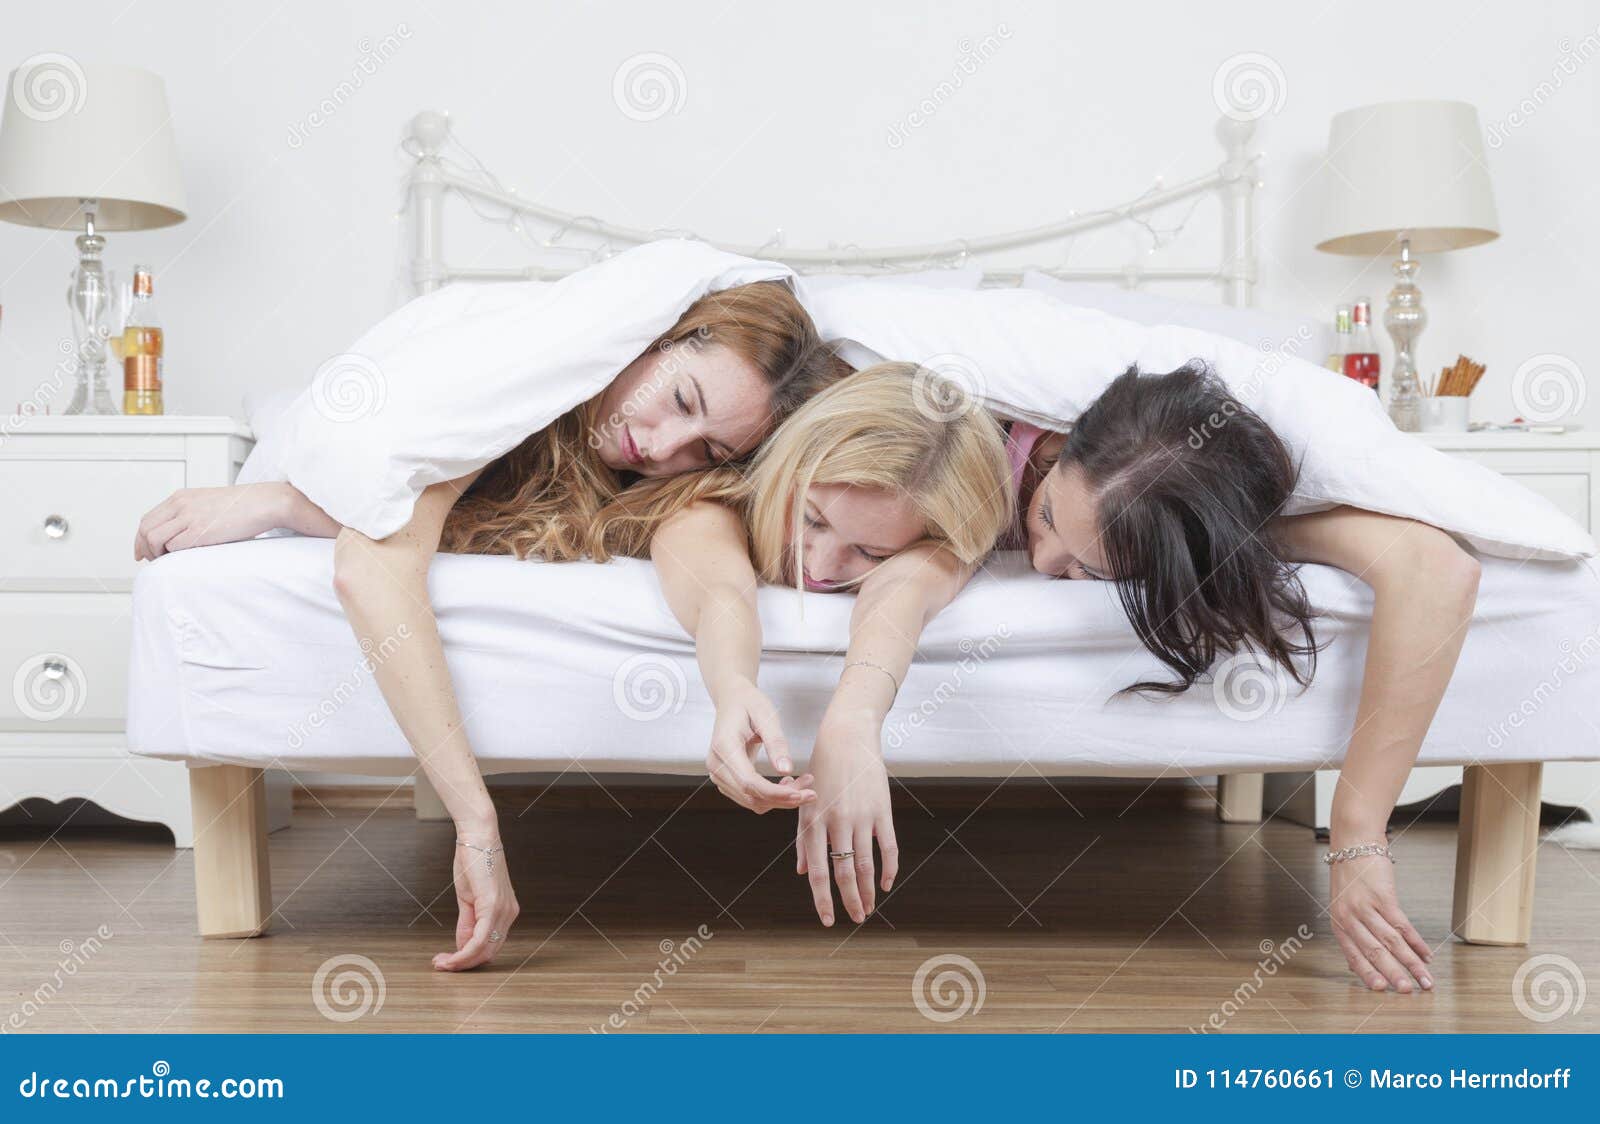 heavily drunk women sleep in bed